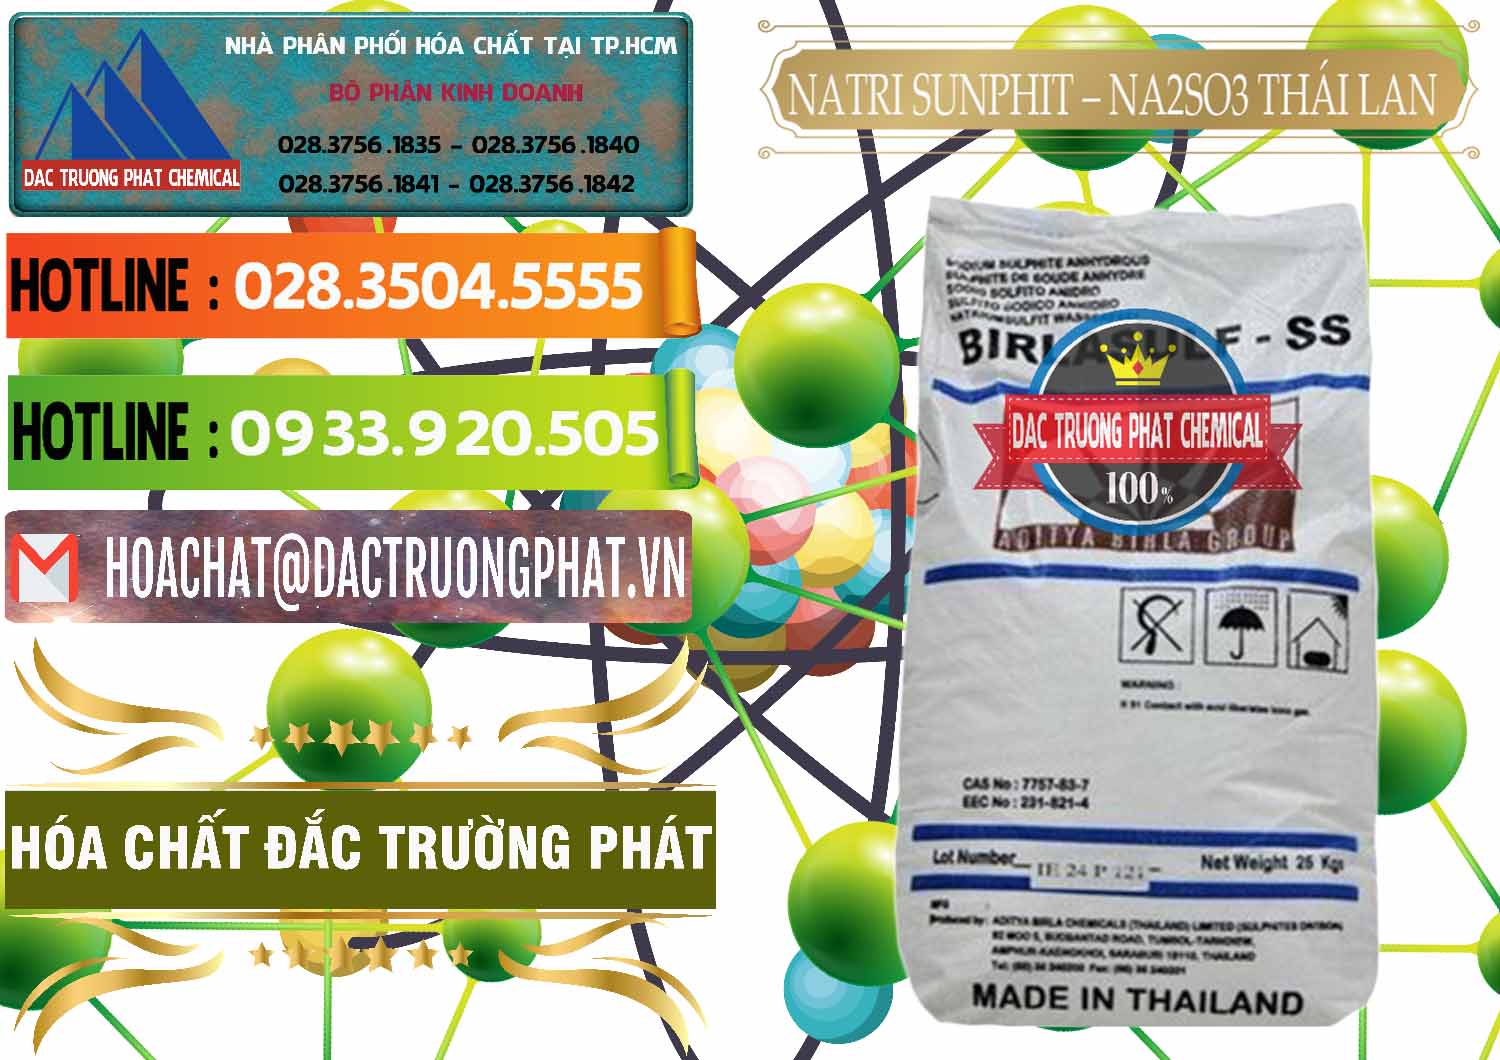 Đơn vị nhập khẩu ( bán ) Natri Sunphit - NA2SO3 Thái Lan - 0105 - Cty kinh doanh và cung cấp hóa chất tại TP.HCM - cungcaphoachat.com.vn